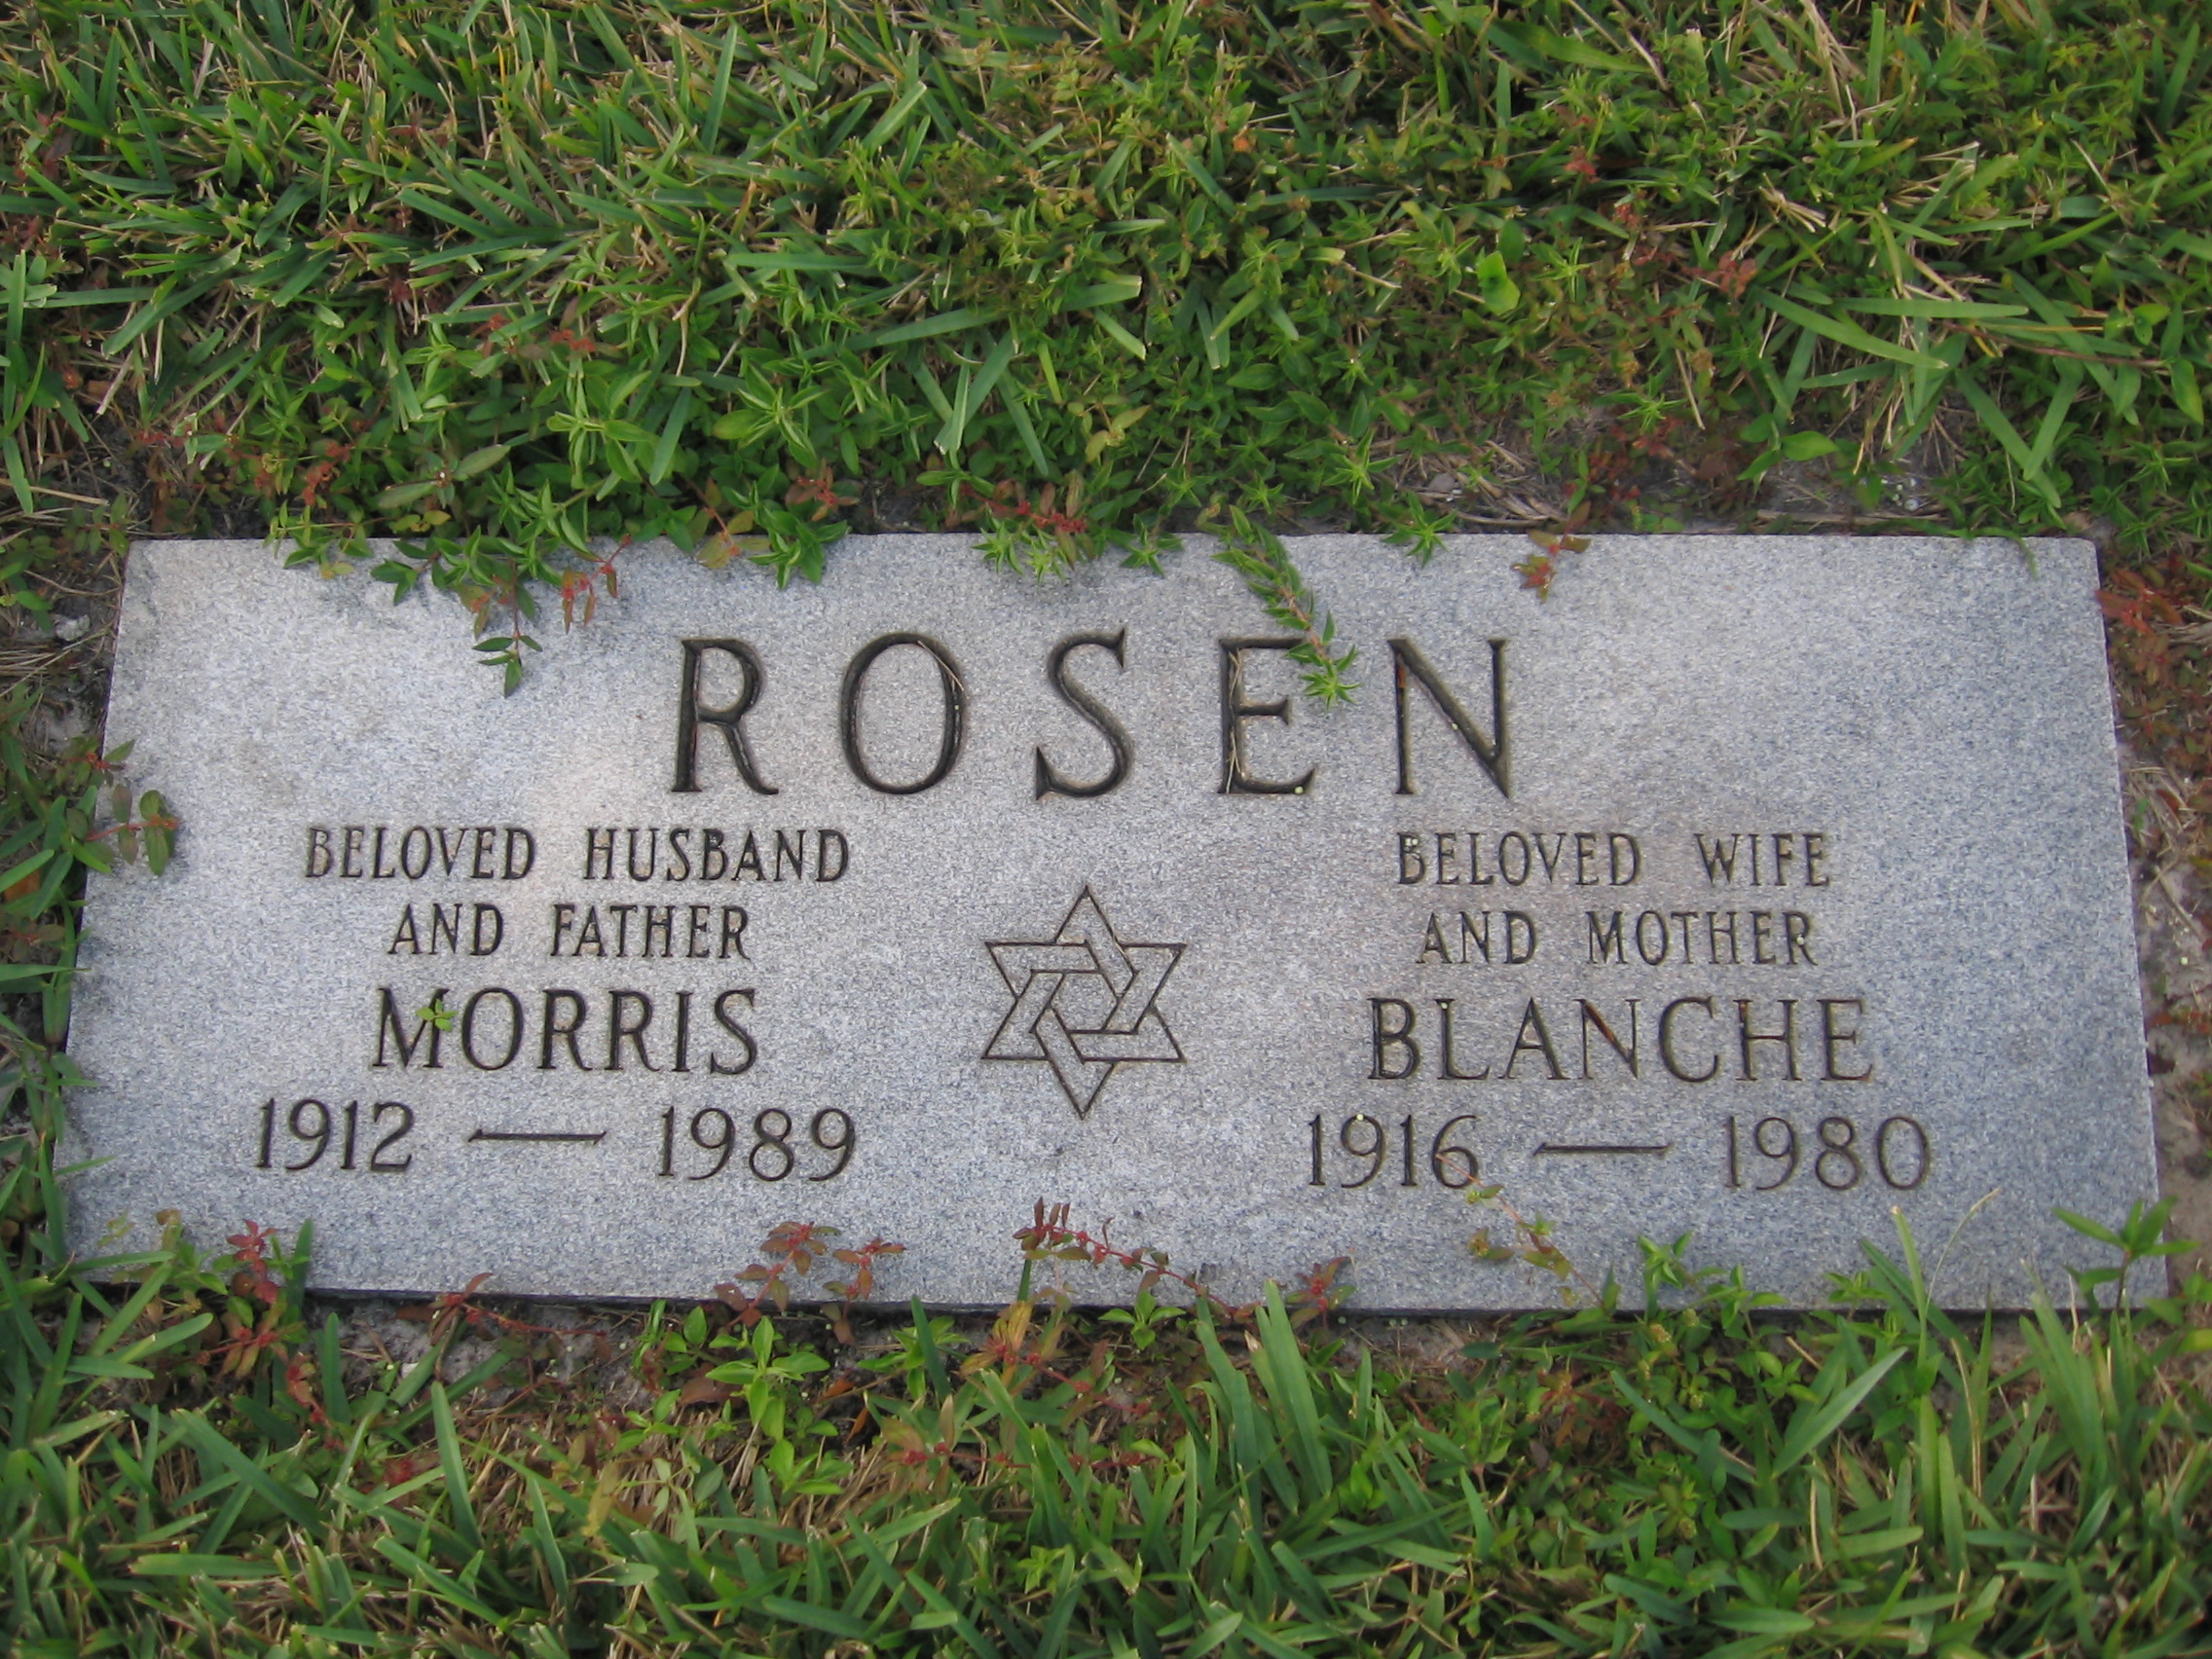 Blanche Rosen